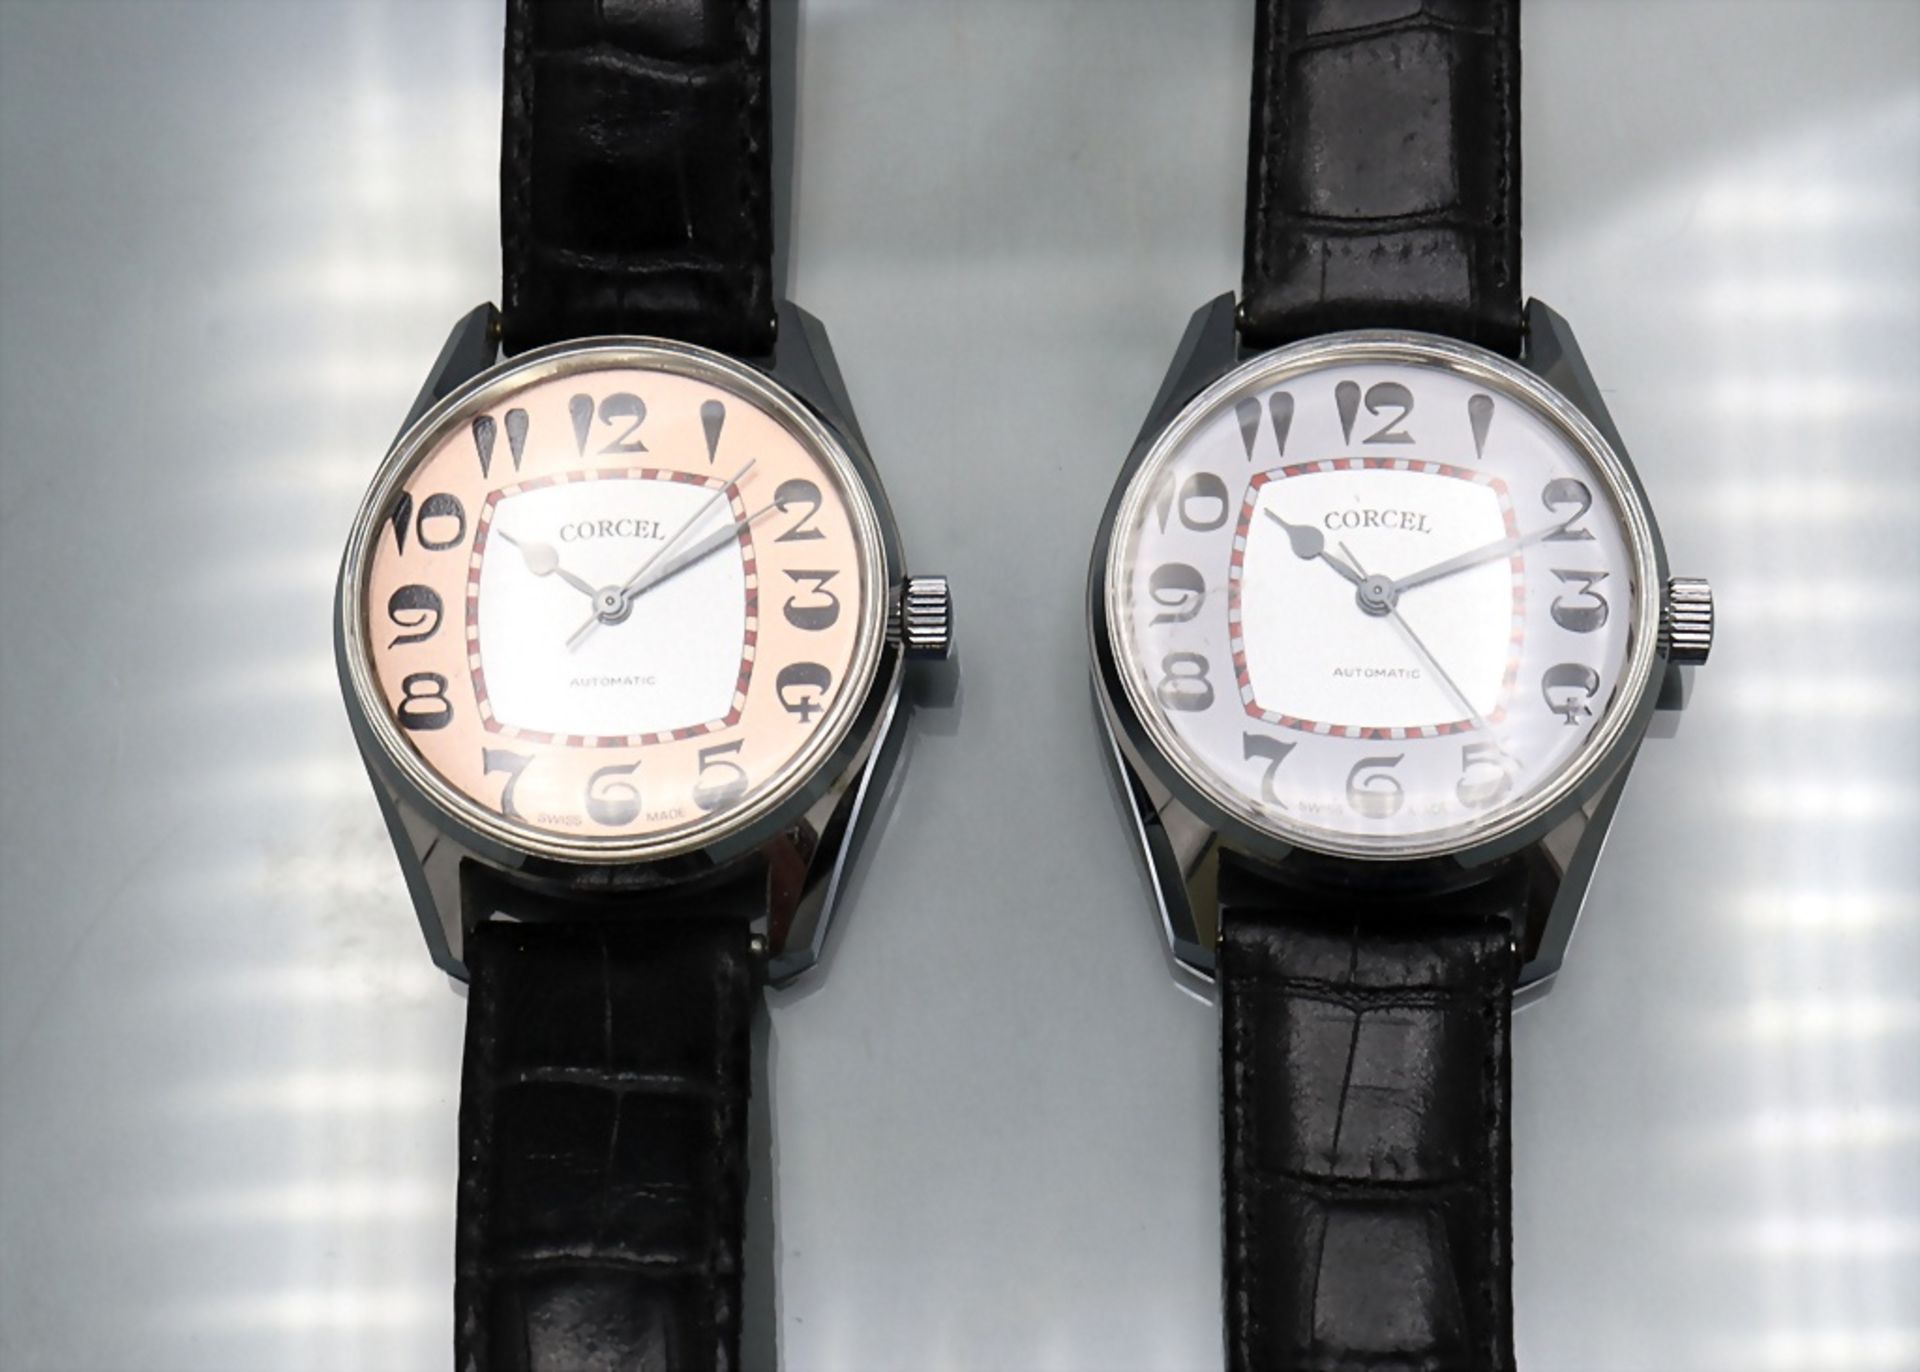 Zwei Herrenarmbanduhren / Two men's wristwatches, Corcel - Bild 6 aus 7